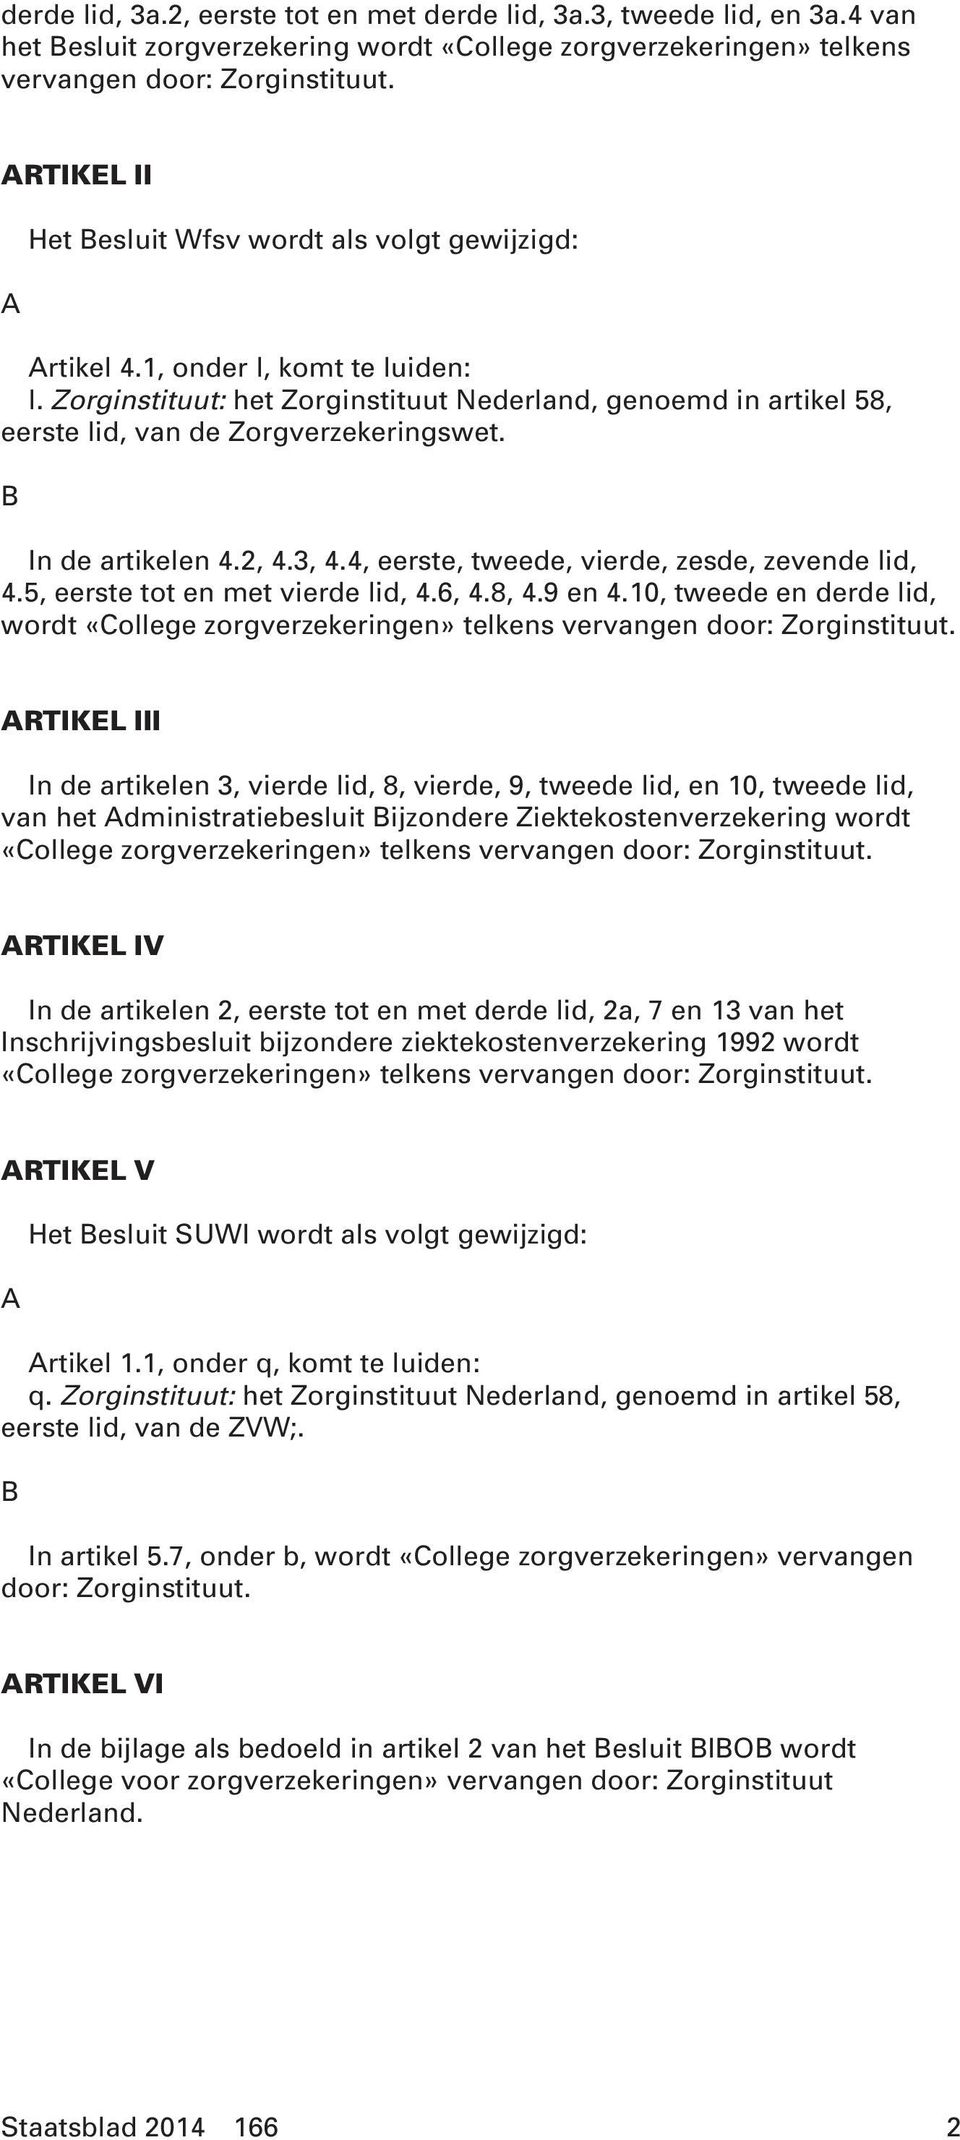 Zorginstituut: het Zorginstituut Nederland, genoemd in artikel 58, eerste lid, van de Zorgverzekeringswet. B In de artikelen 4.2, 4.3, 4.4, eerste, tweede, vierde, zesde, zevende lid, 4.